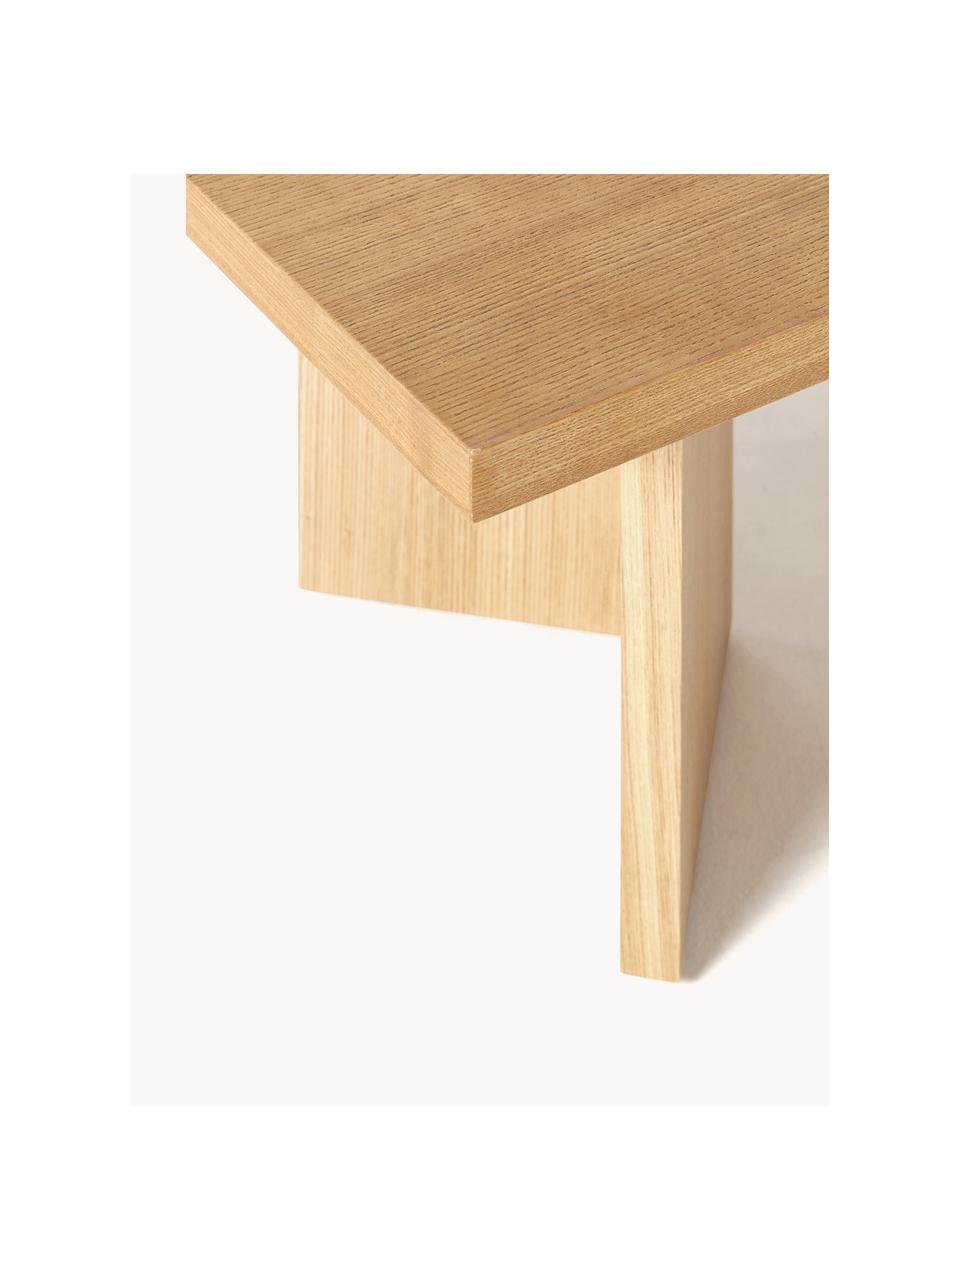 Dřevěný konferenční stolek Toni, Lakovaná MDF deska (dřevovláknitá deska střední hustoty) s dubovou dýhou, Jasanové dřevo, Š 100 cm, H 55 cm